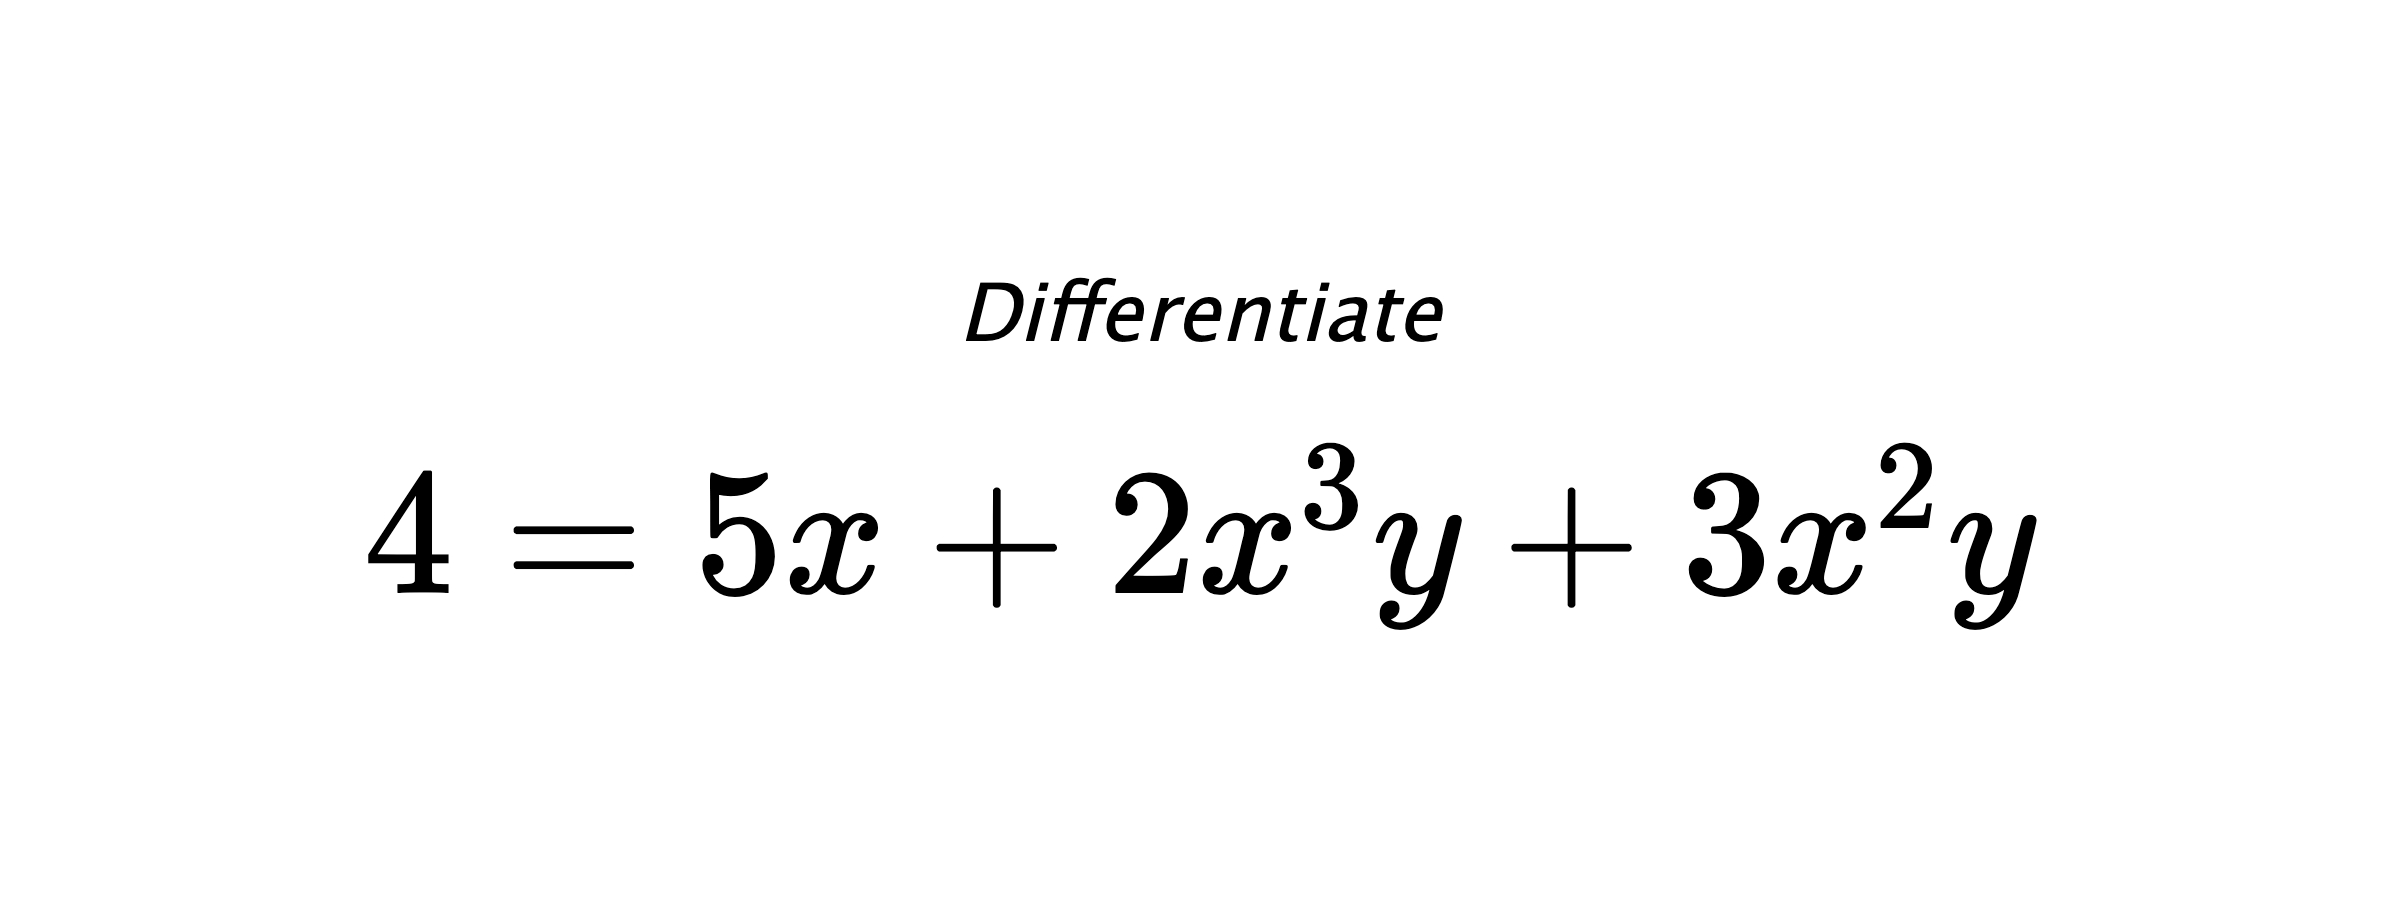 Differentiate $ 4 = 5x + 2x^3y + 3x^2y $